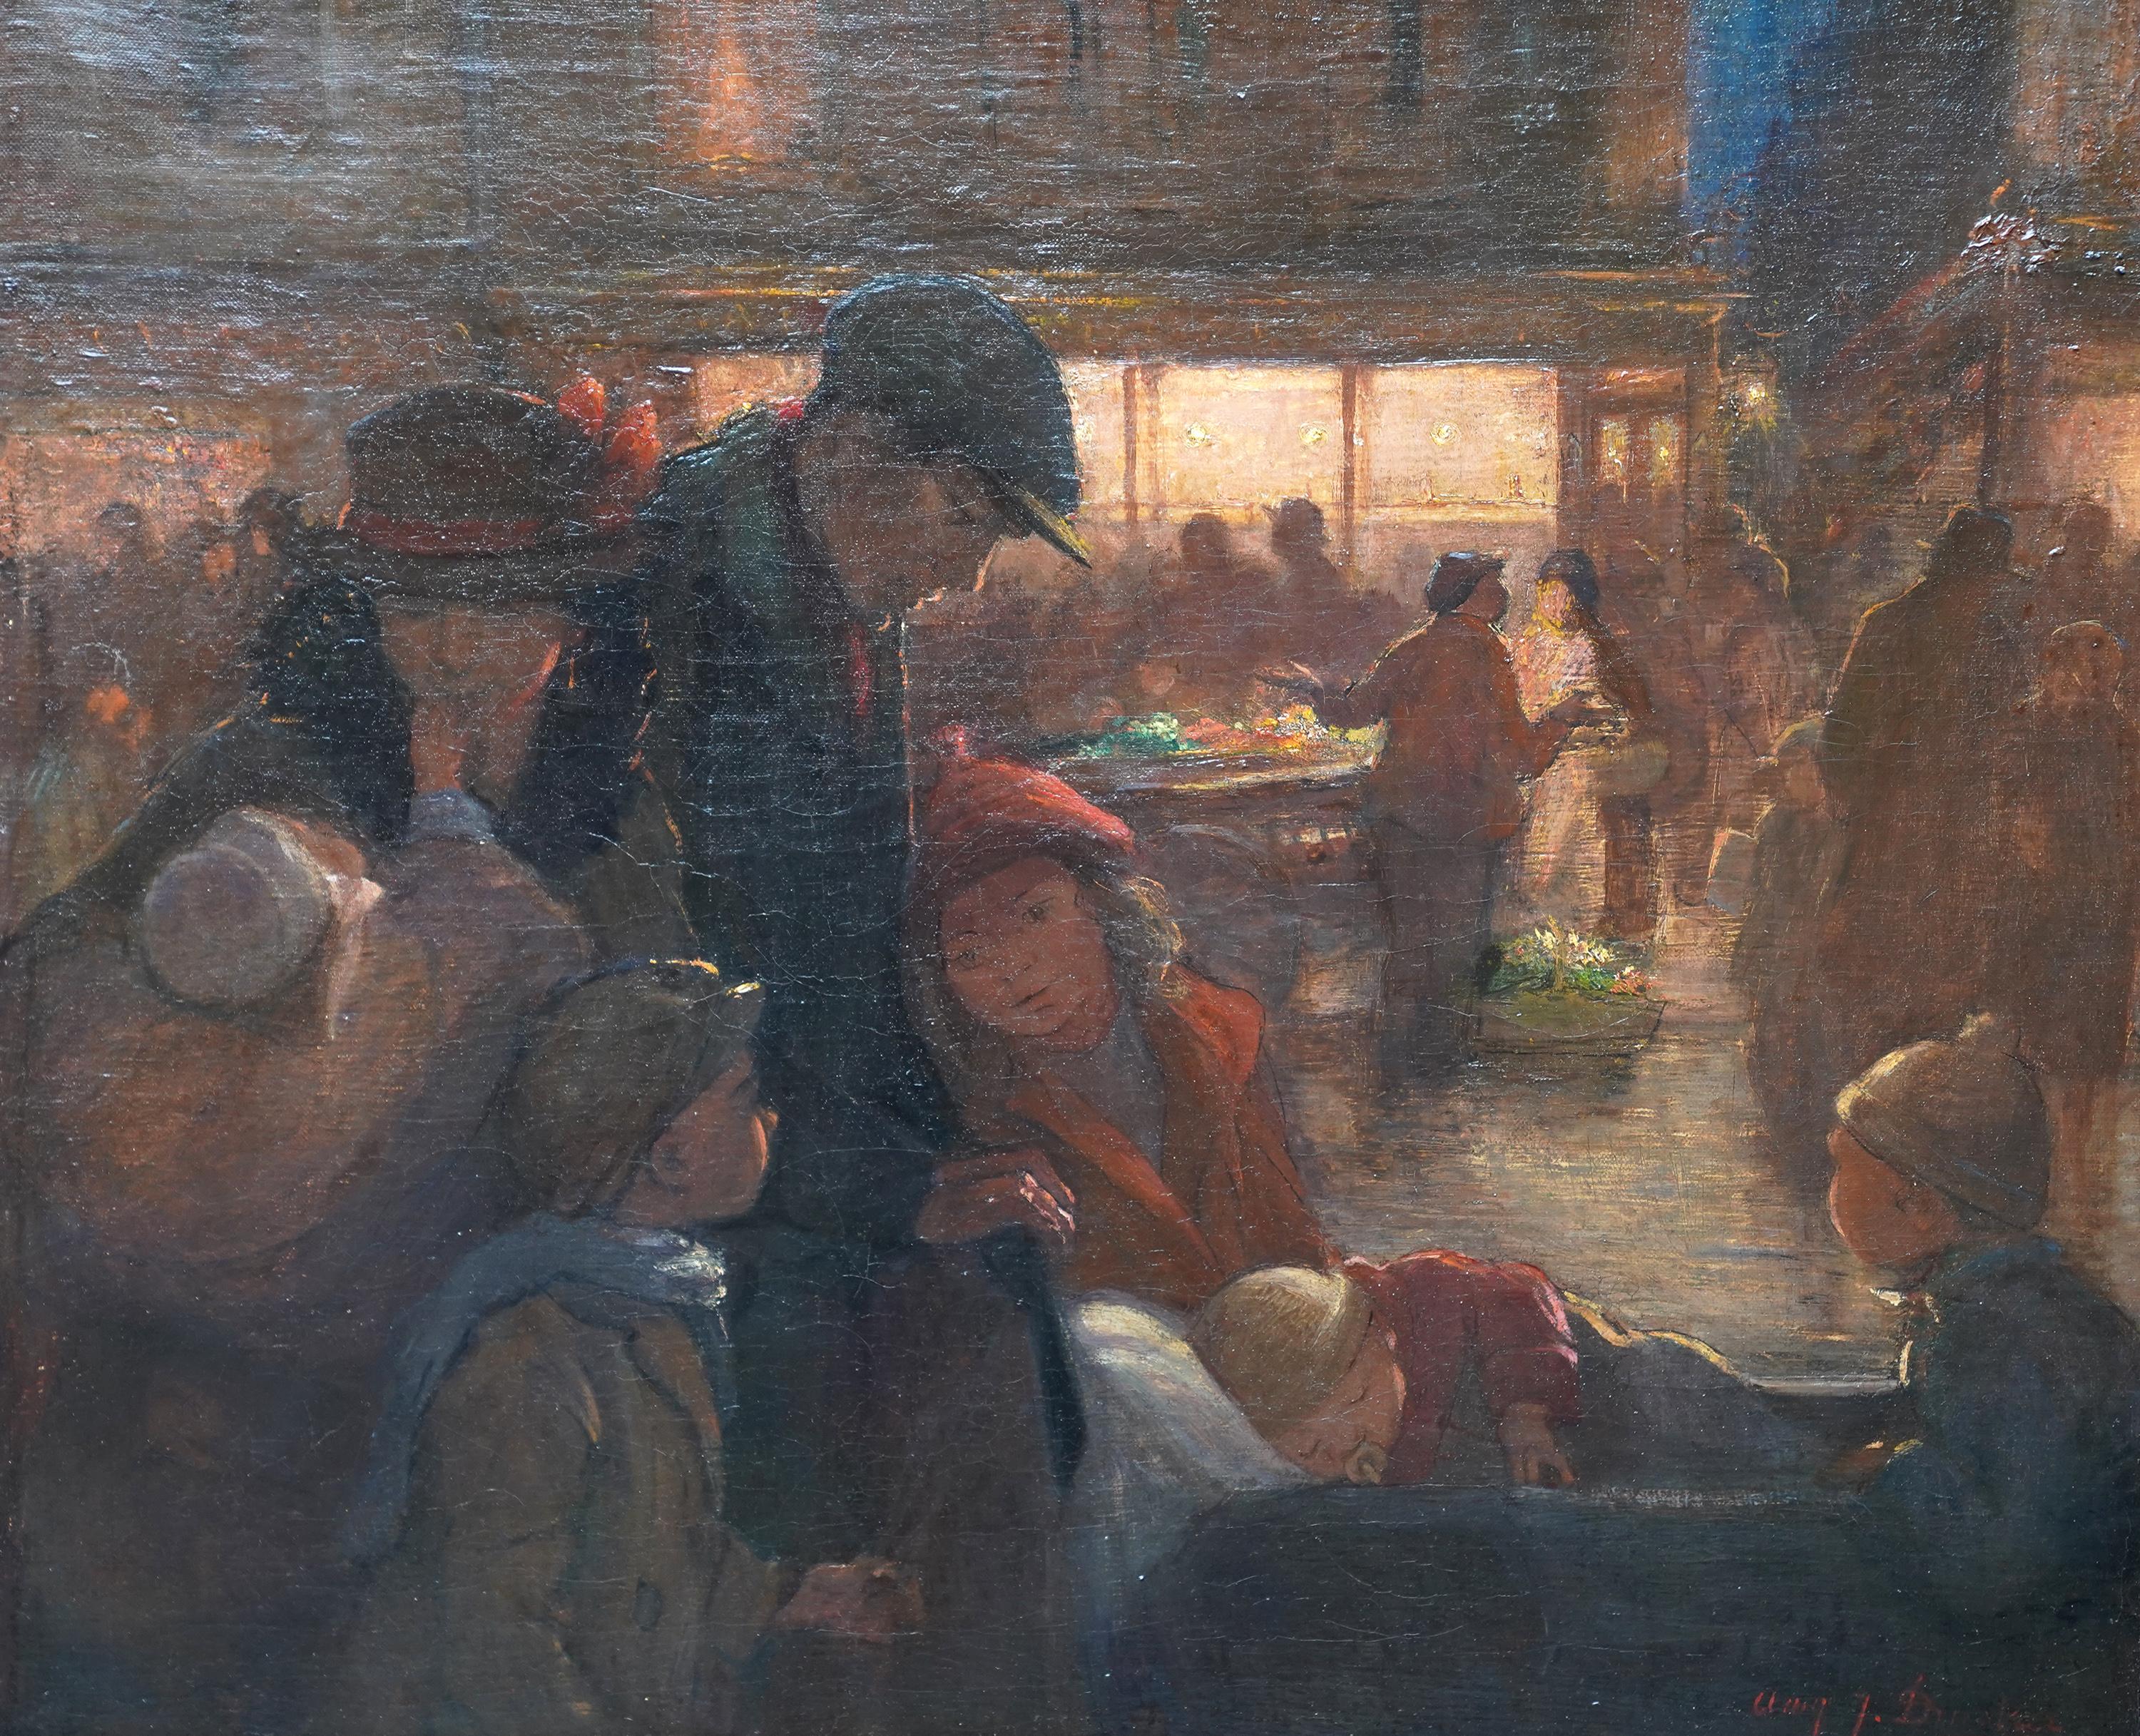 Portrait de famille sur le marché - Peinture à l'huile post-impressionniste britannique de 1914 - Painting de Amy Julia Drucker 